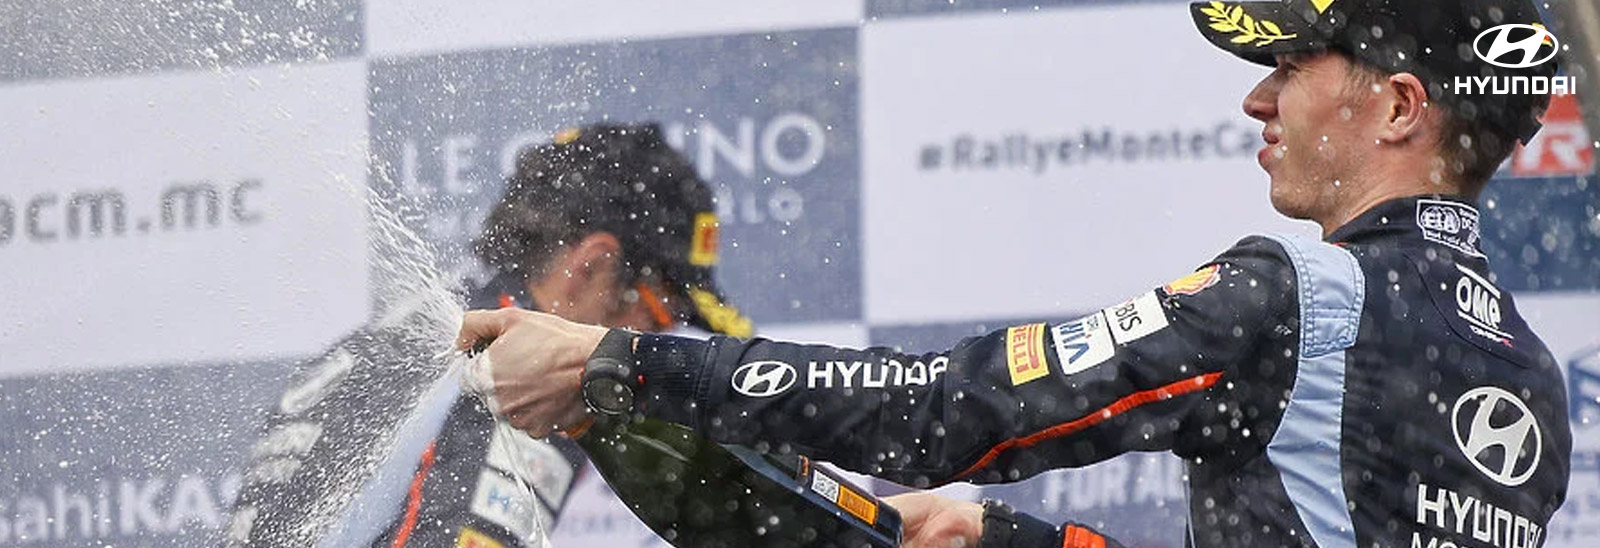 Pilots de Hyundai WRC celebrando podio